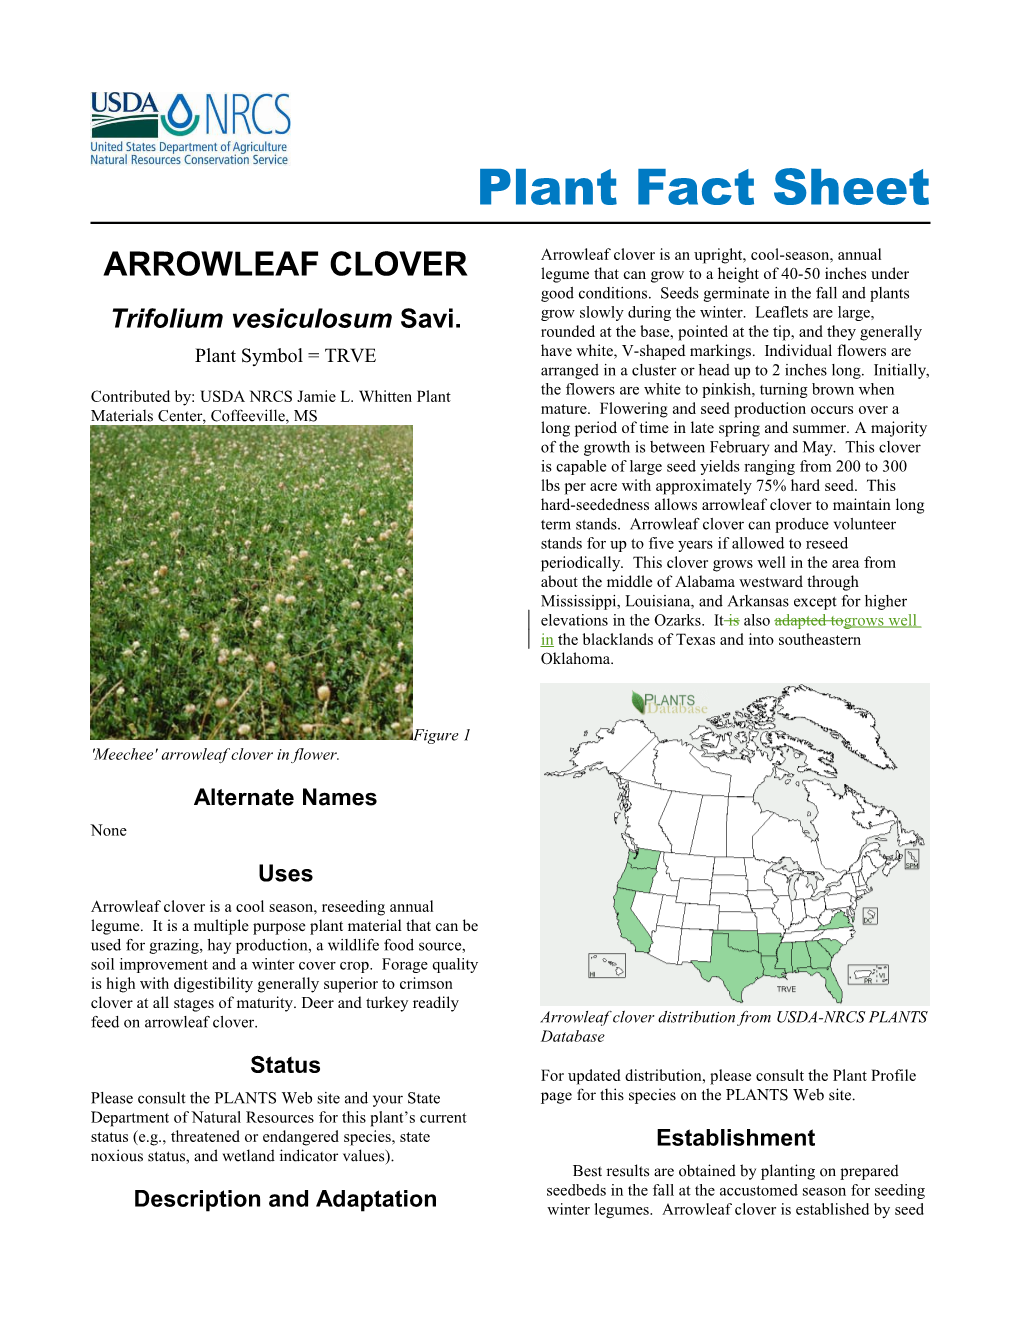 Arrowleaf Clover (Trifolium Vesiculosum) Plant Fact Sheet